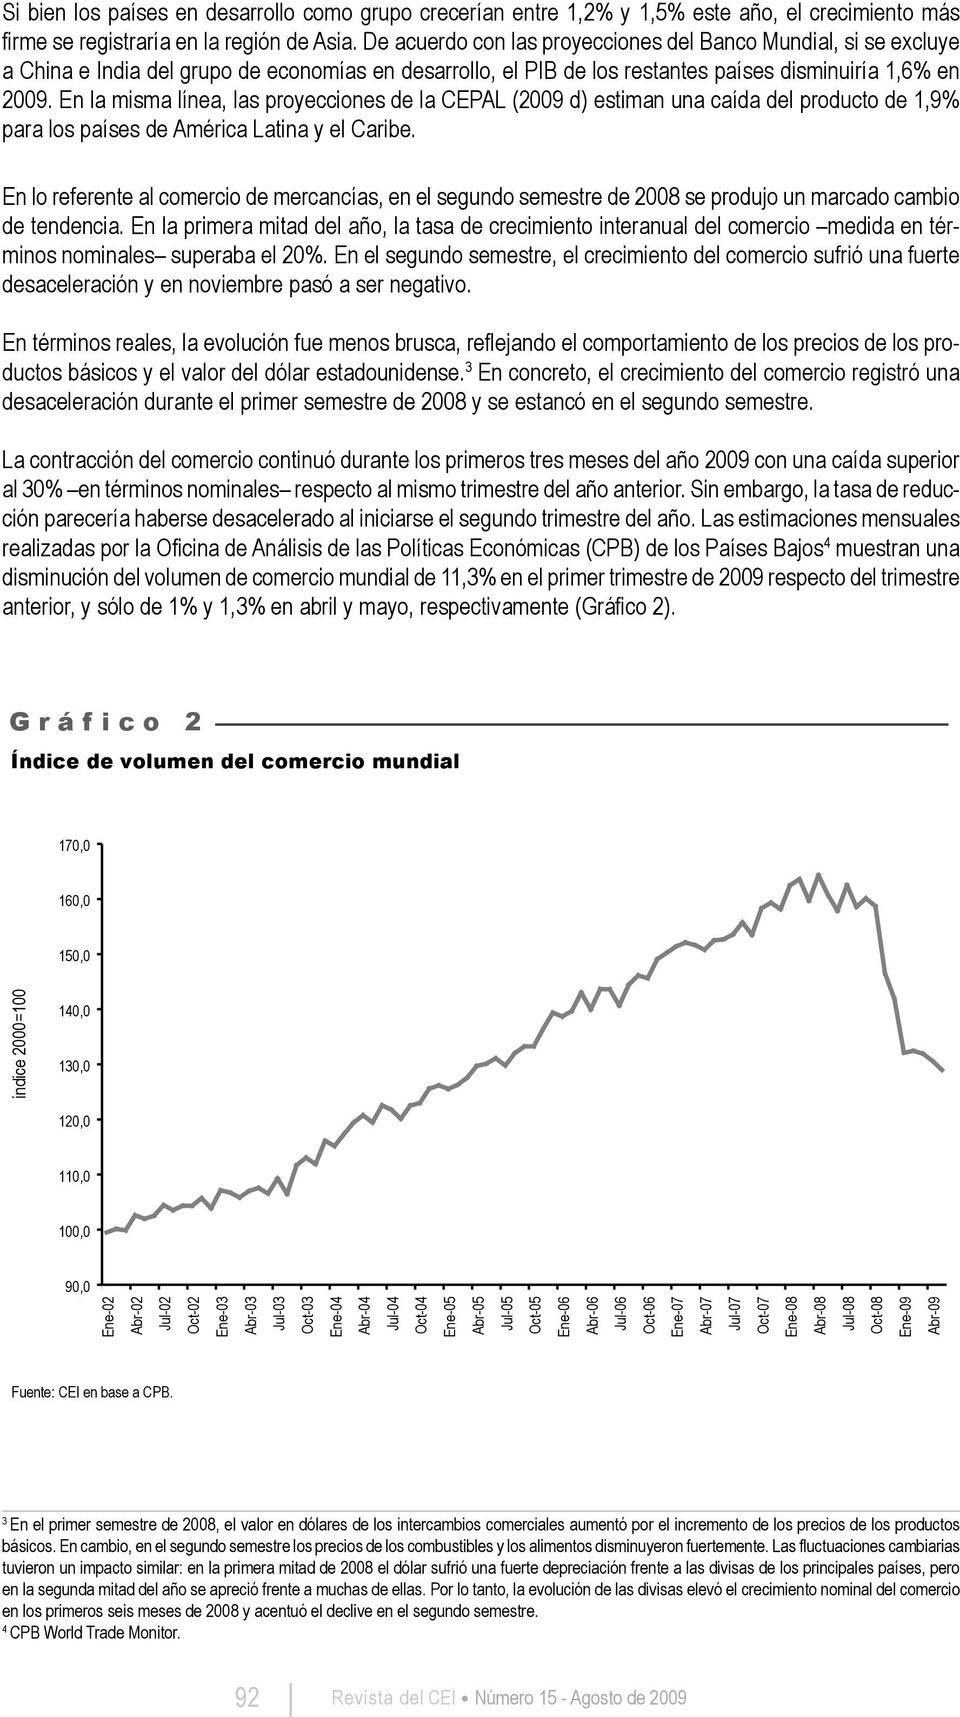 En la misma línea, las proyecciones de la CEPAL (2009 d) estiman una caída del producto de 1,9% para los países de América Latina y el Caribe.